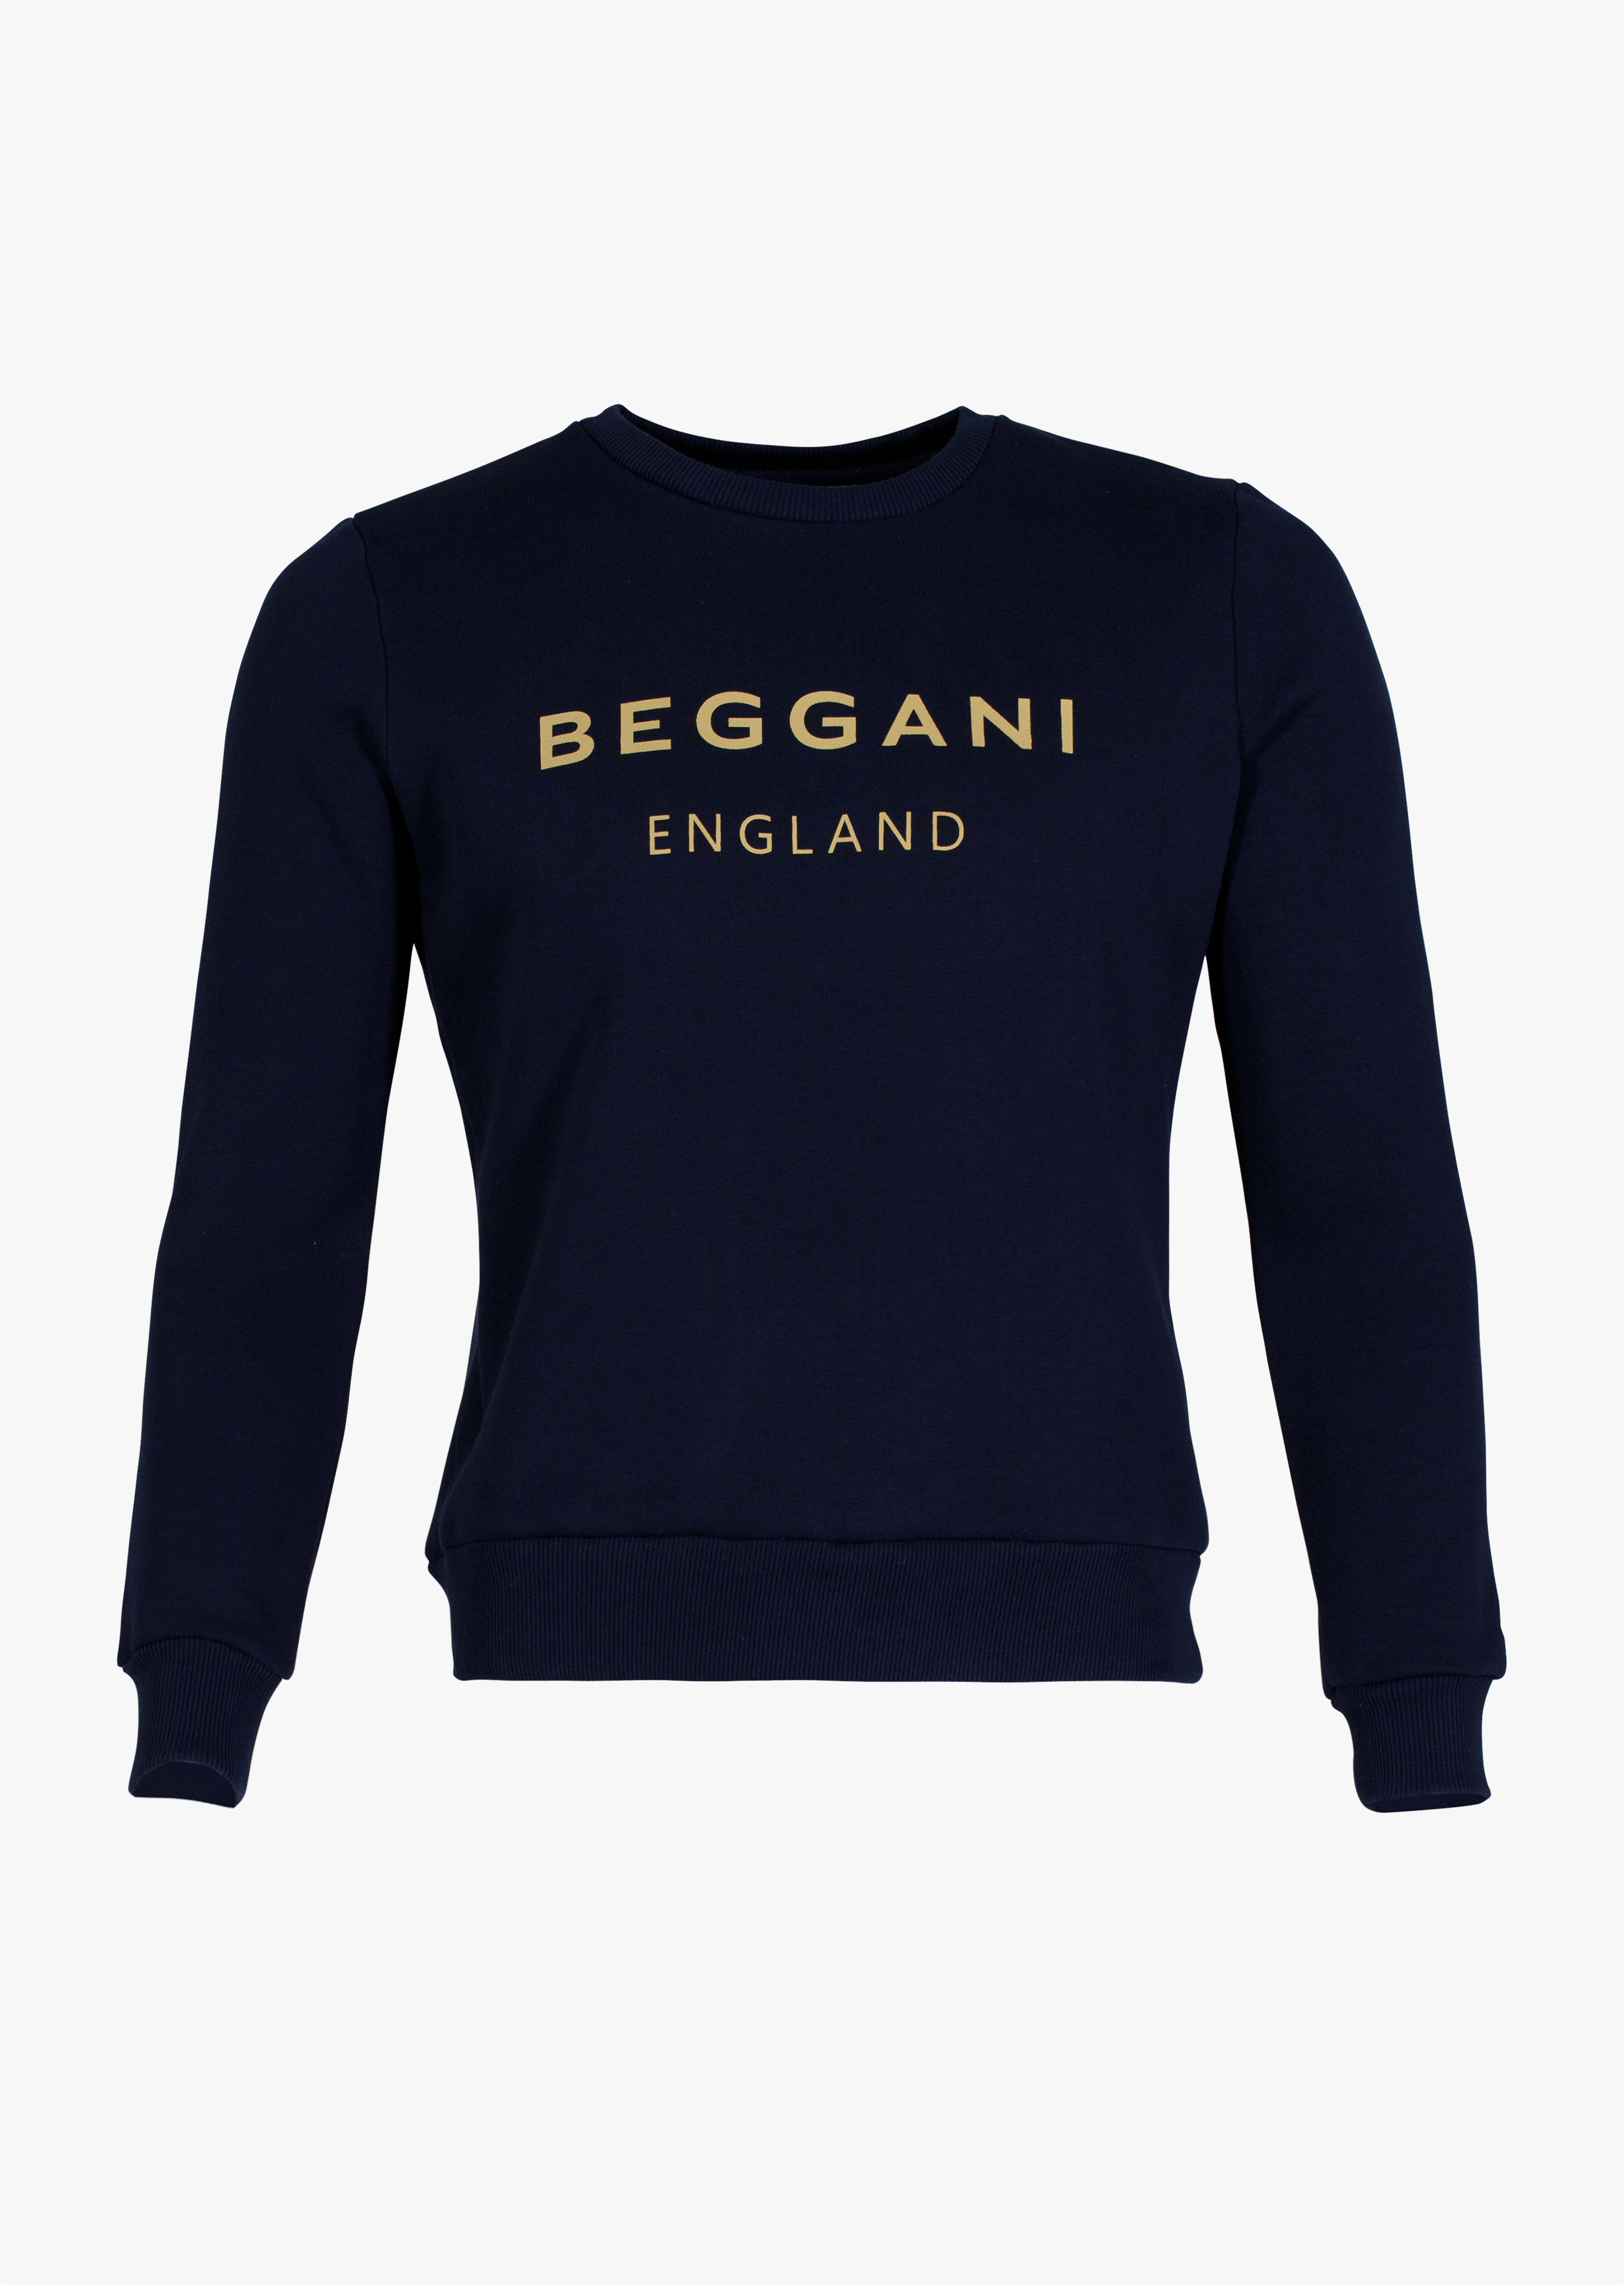 BEGGANI England sweatshirt